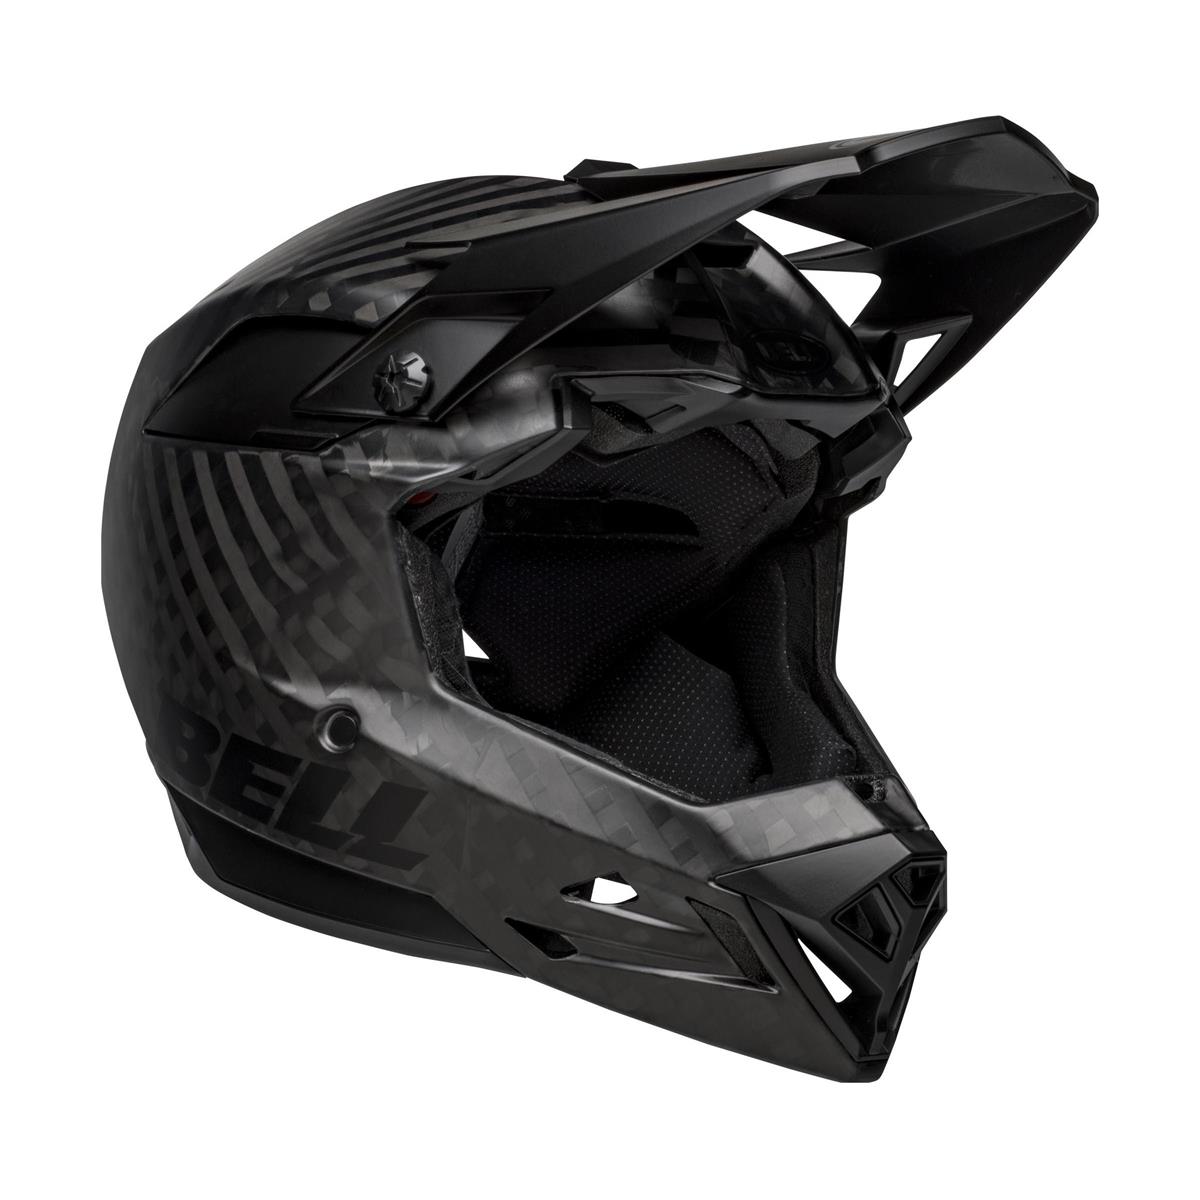 Full-10 Spherical Matte Black Carbon Full Face Helmet Size XS/S (51-55cm)